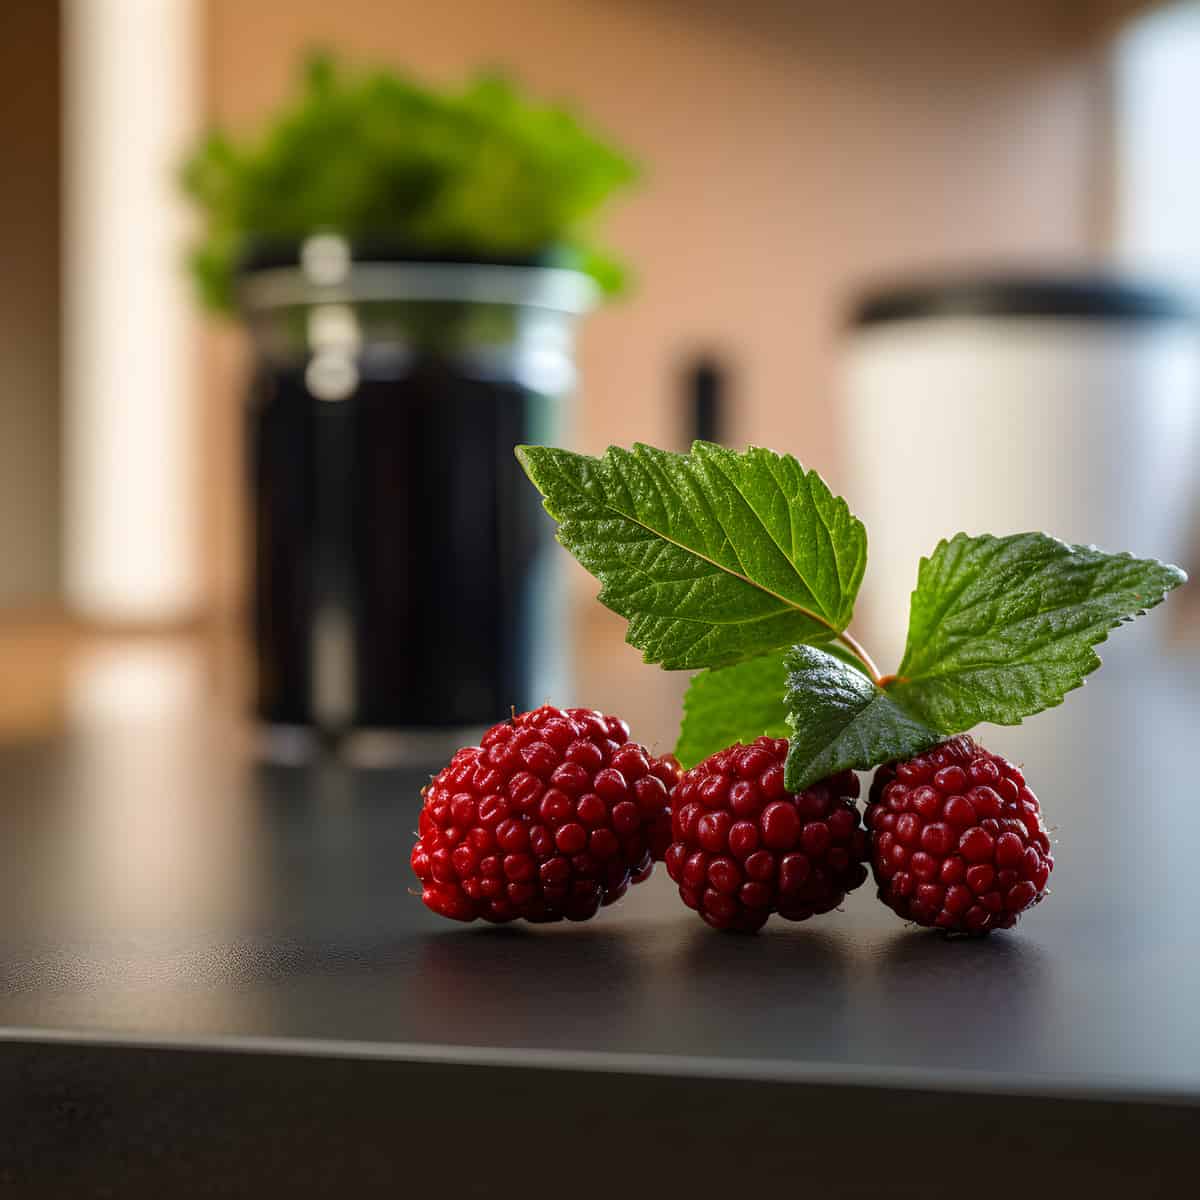 Dwarf Red Blackberries on a kitchen counter